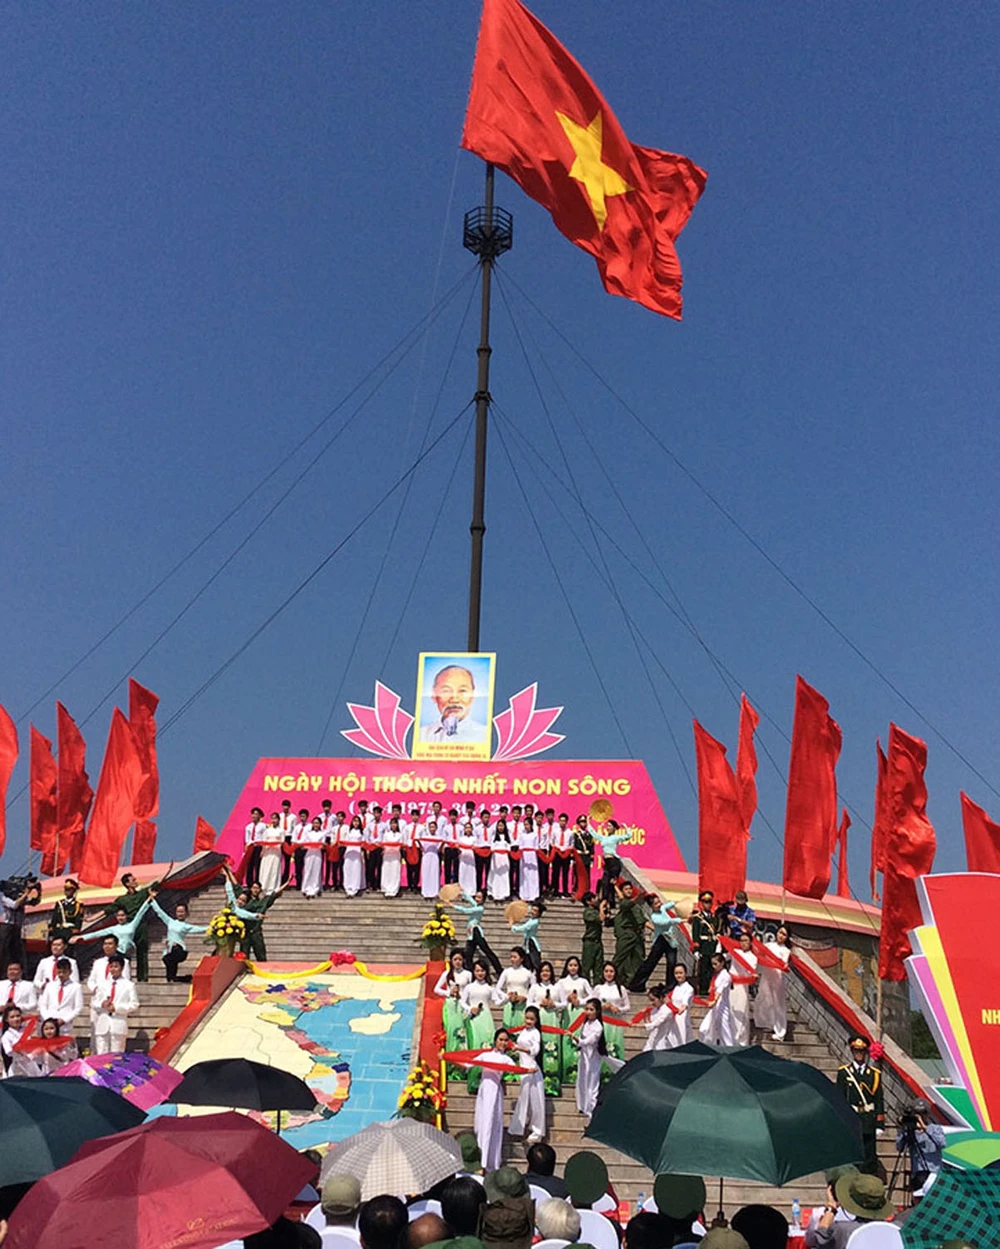 Lễ Thượng cờ thống nhất non sông tại Kỳ Đài Hiền Lương.